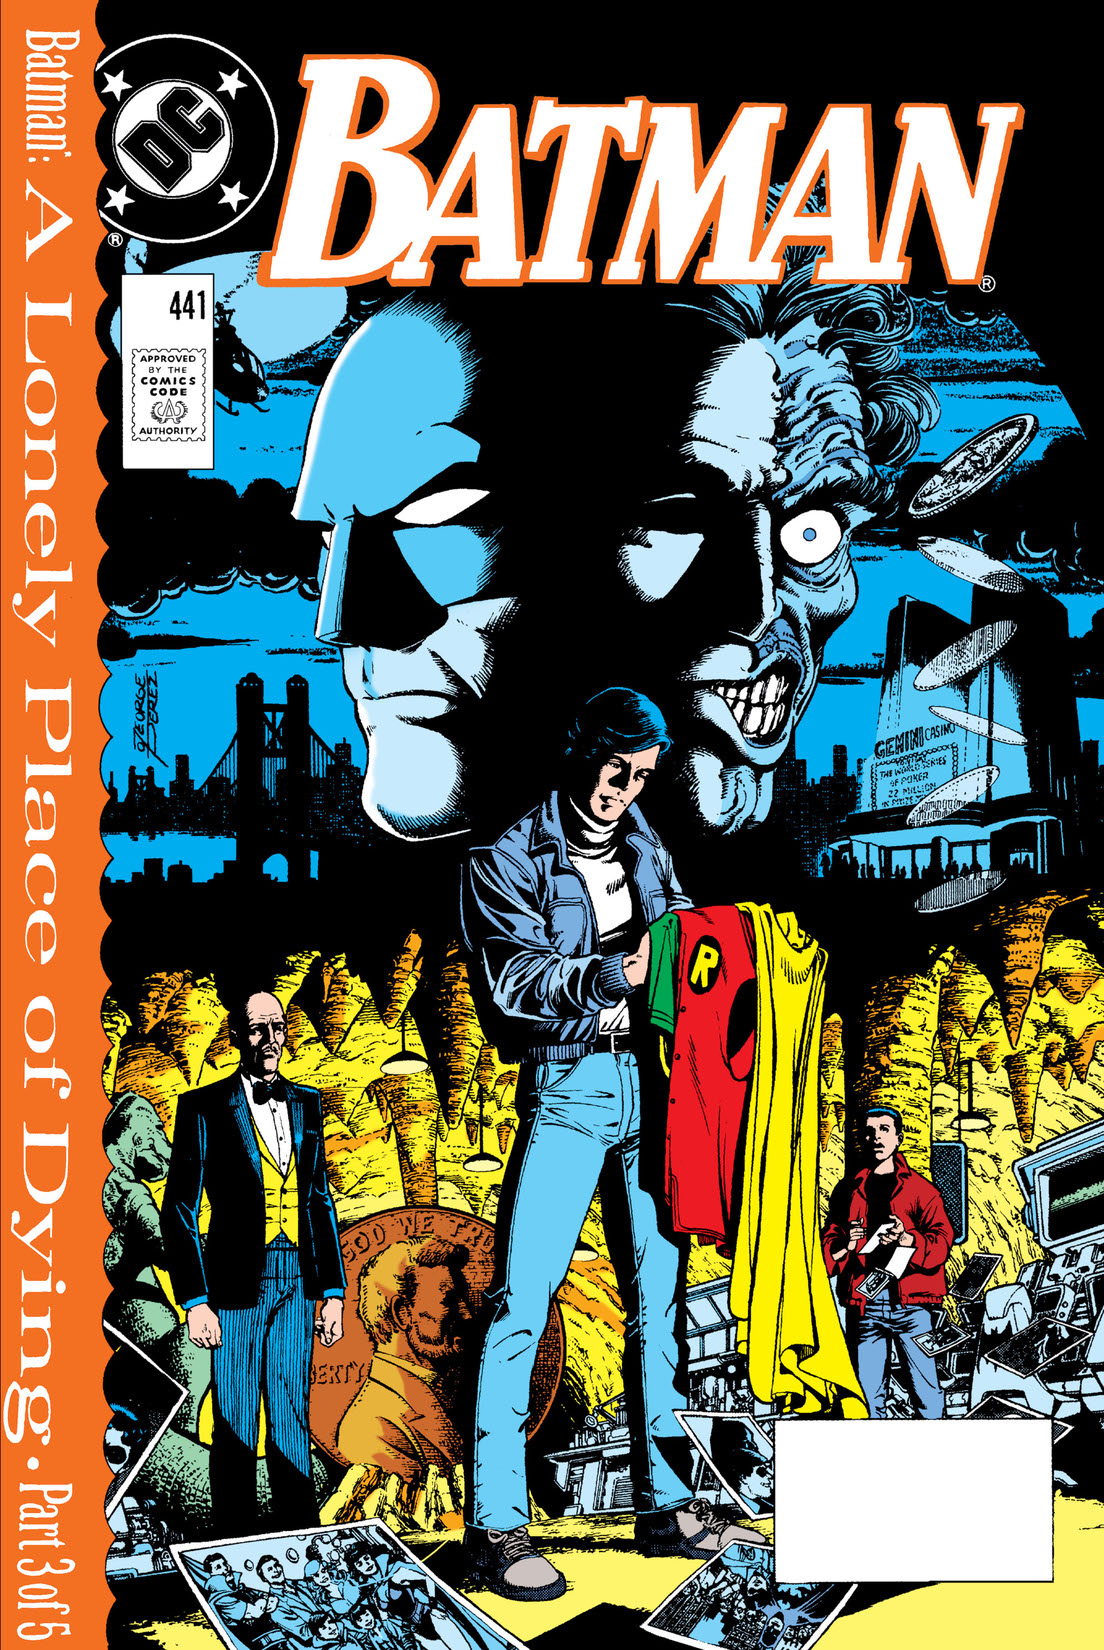 Batman (1940-) #441 preview images